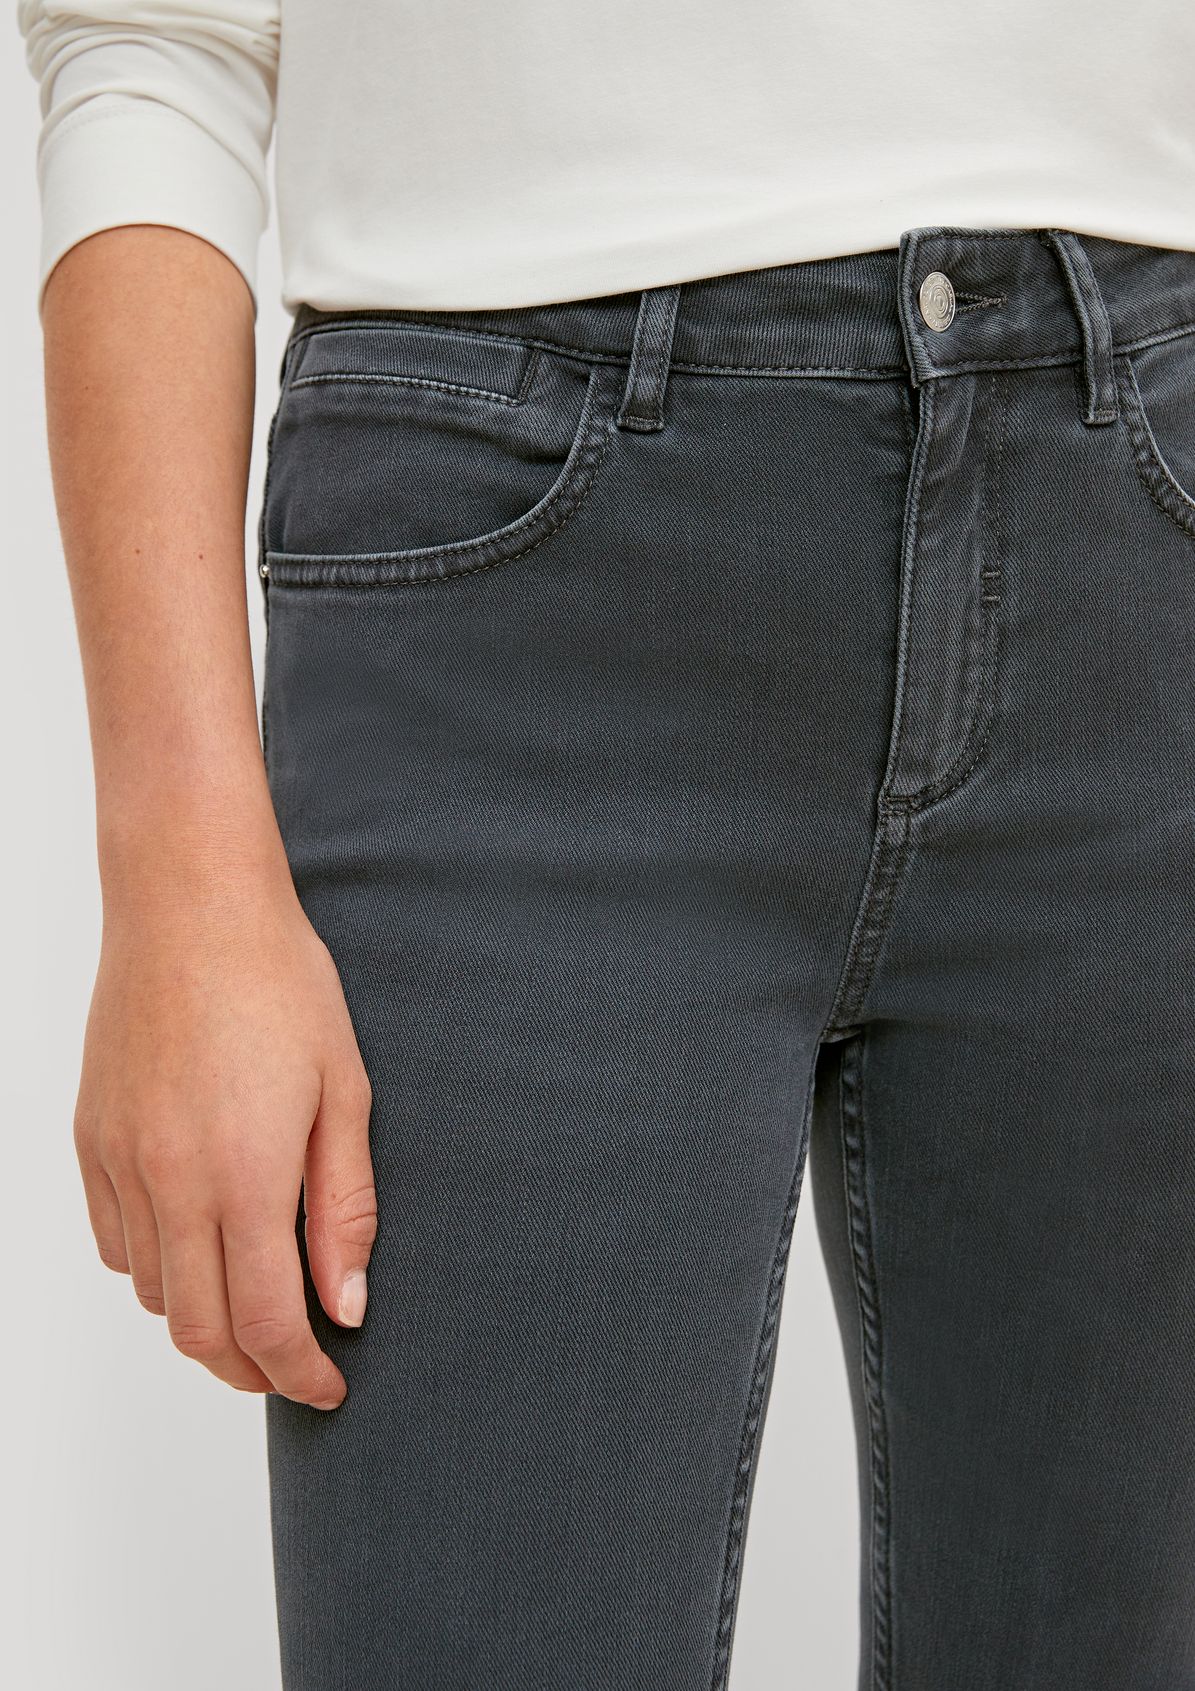 Jeans mit Zippern am Beinsaum 